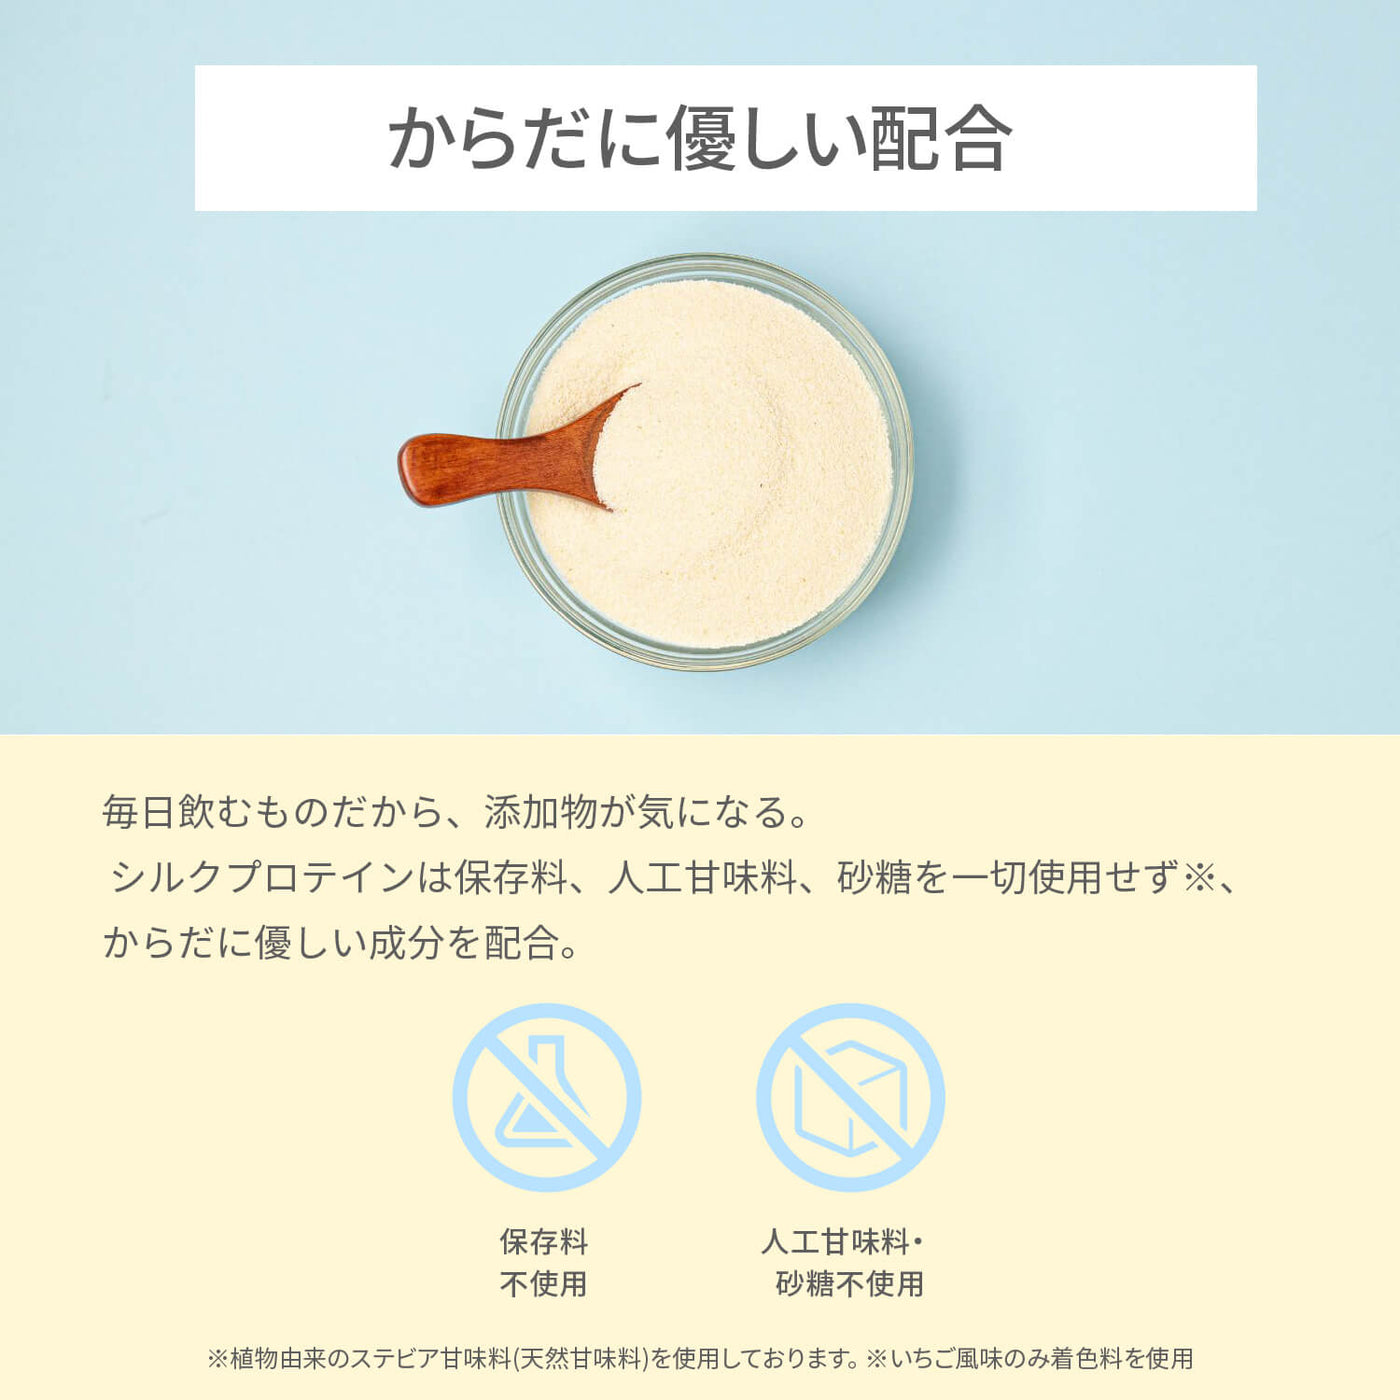 【新生活応援SALE】シルクプロテイン (いちご風味)